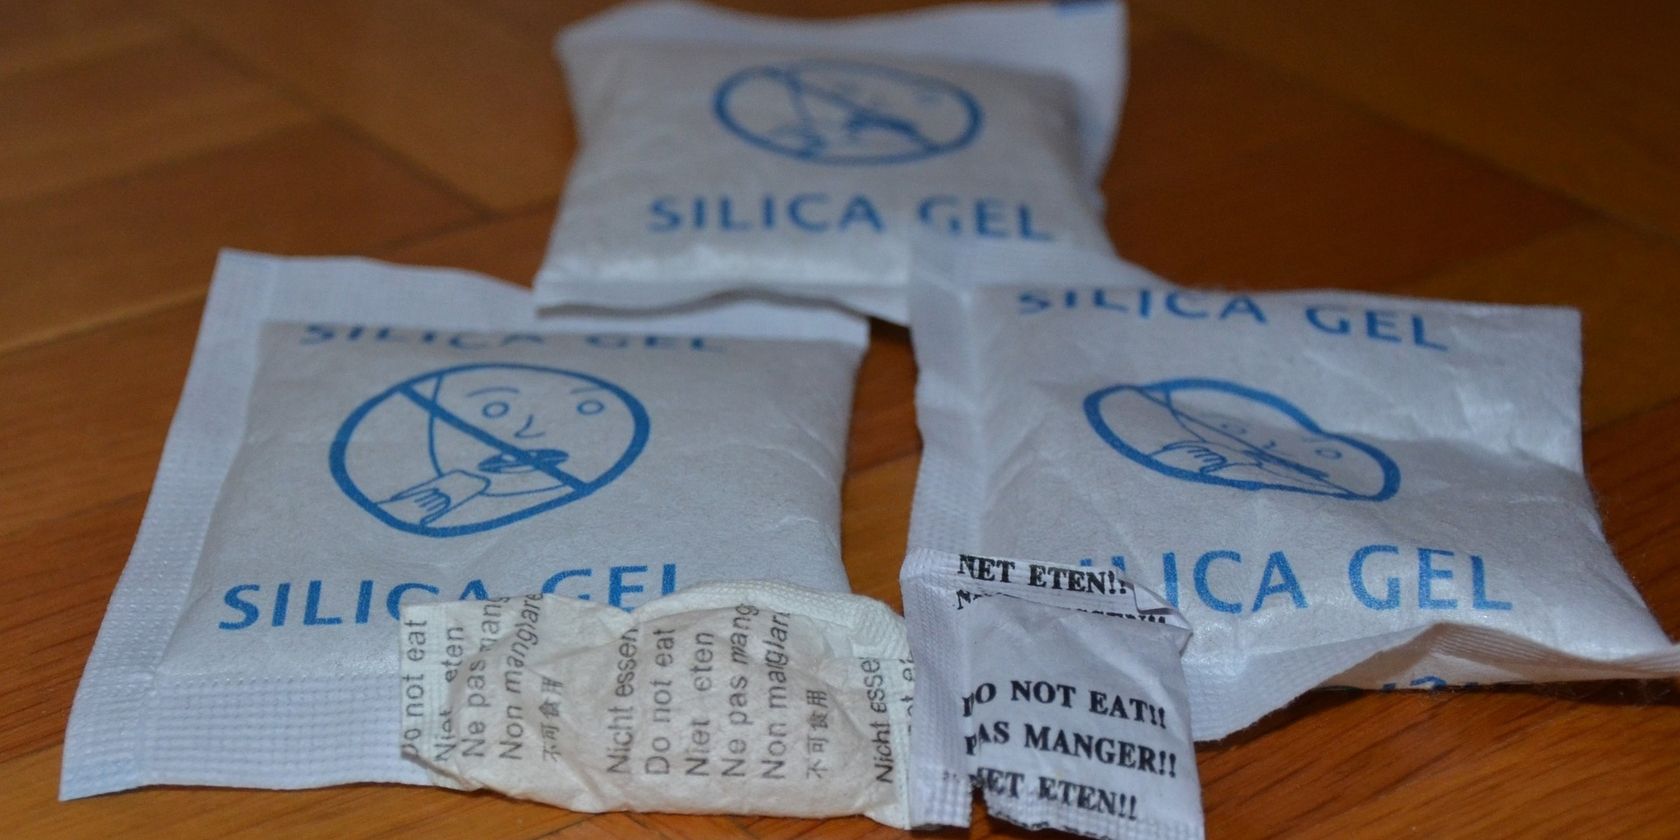 Gói silica gel trên bàn